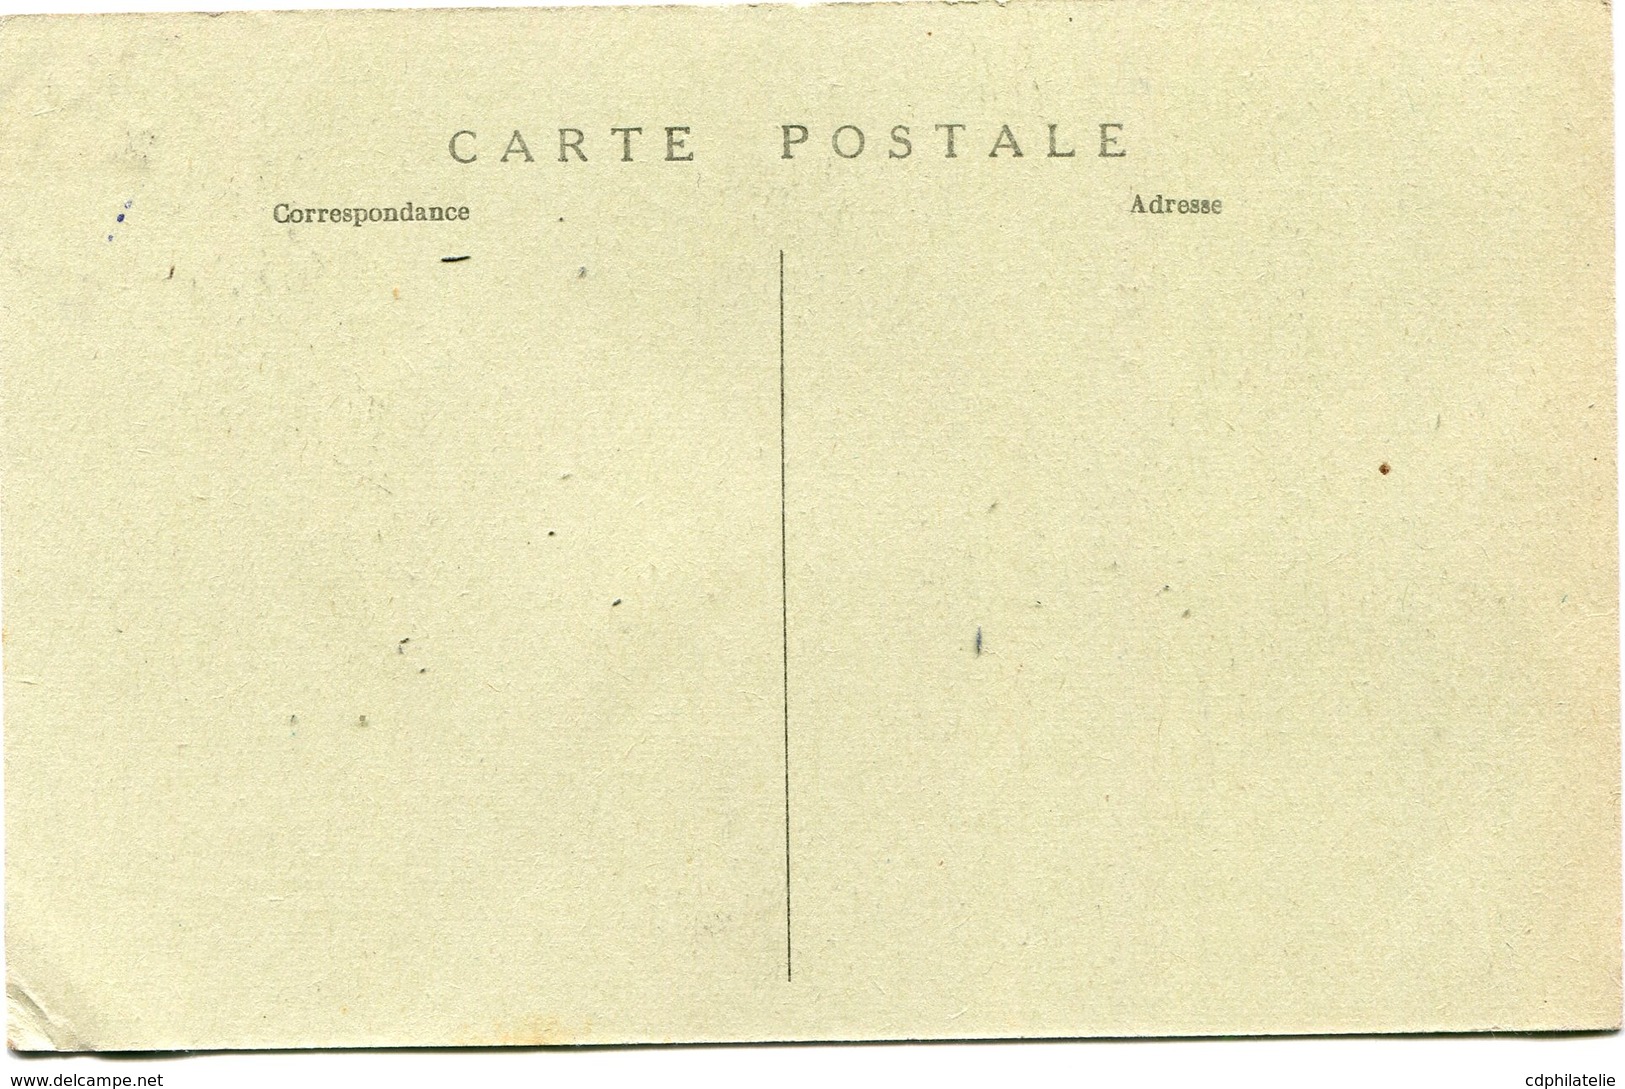 INDOCHINE CARTE POSTALE DE L'ANNAM -TOURANE -CHEF DES BONZES DE LA PAGODE DE MARBRE AVEC OBLITERATION TOURANE 26-12-24 - Cartas & Documentos